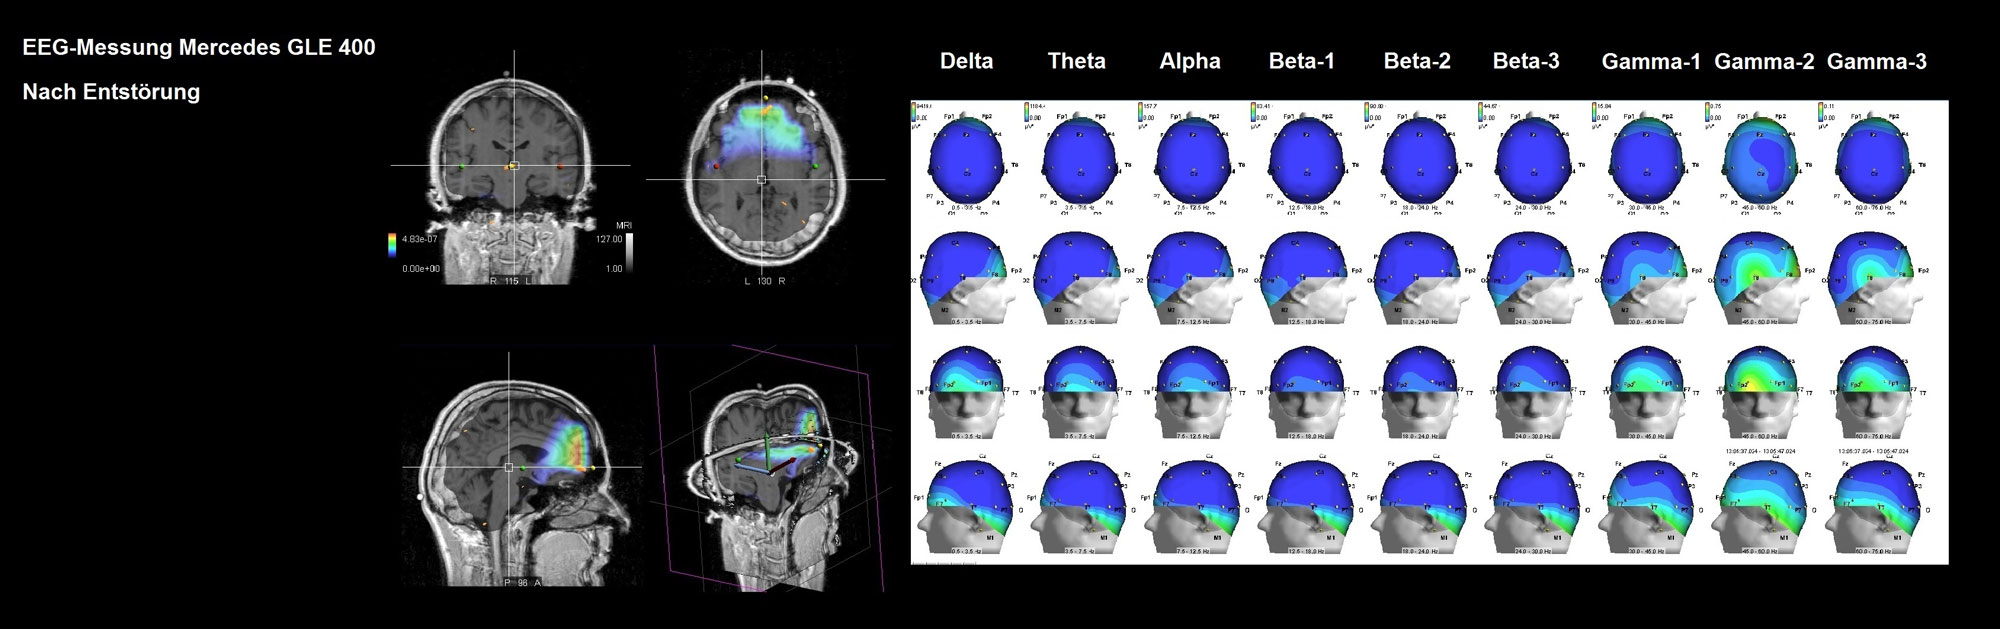 EEG-Messung-Mercedes-nach-der-Entstoerung-2000